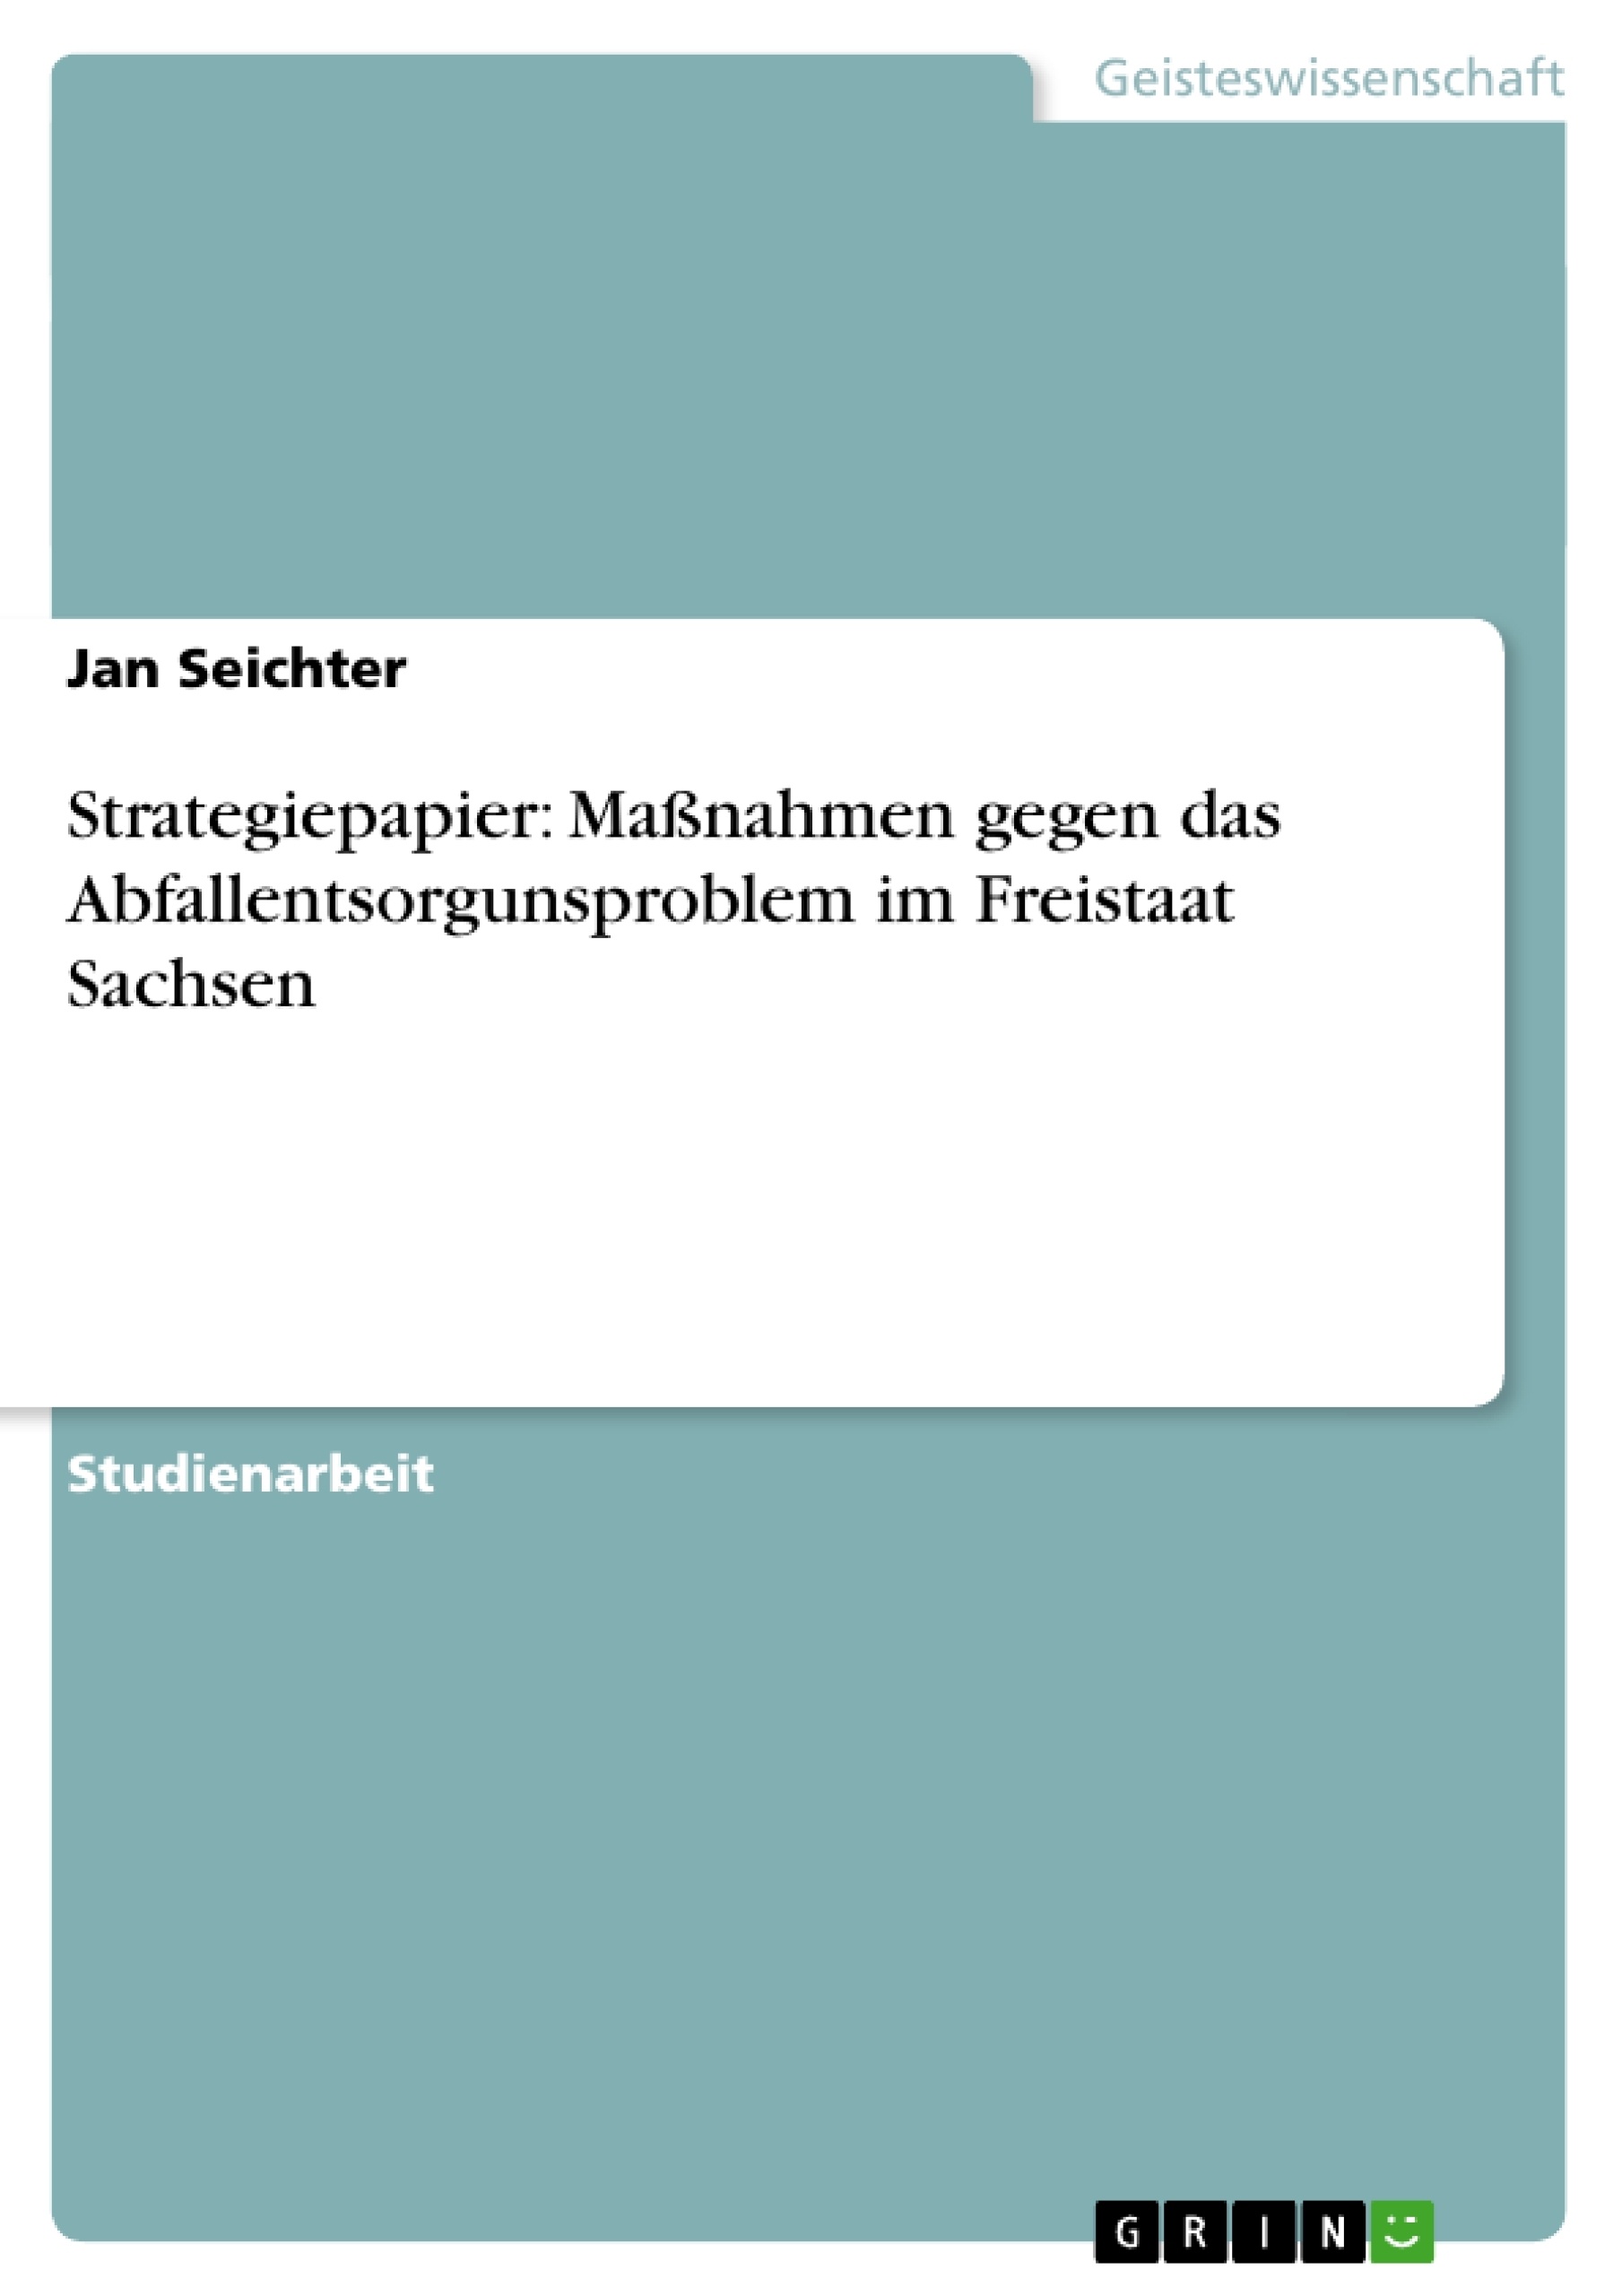 Title: Strategiepapier: Maßnahmen gegen das Abfallentsorgunsproblem im Freistaat Sachsen